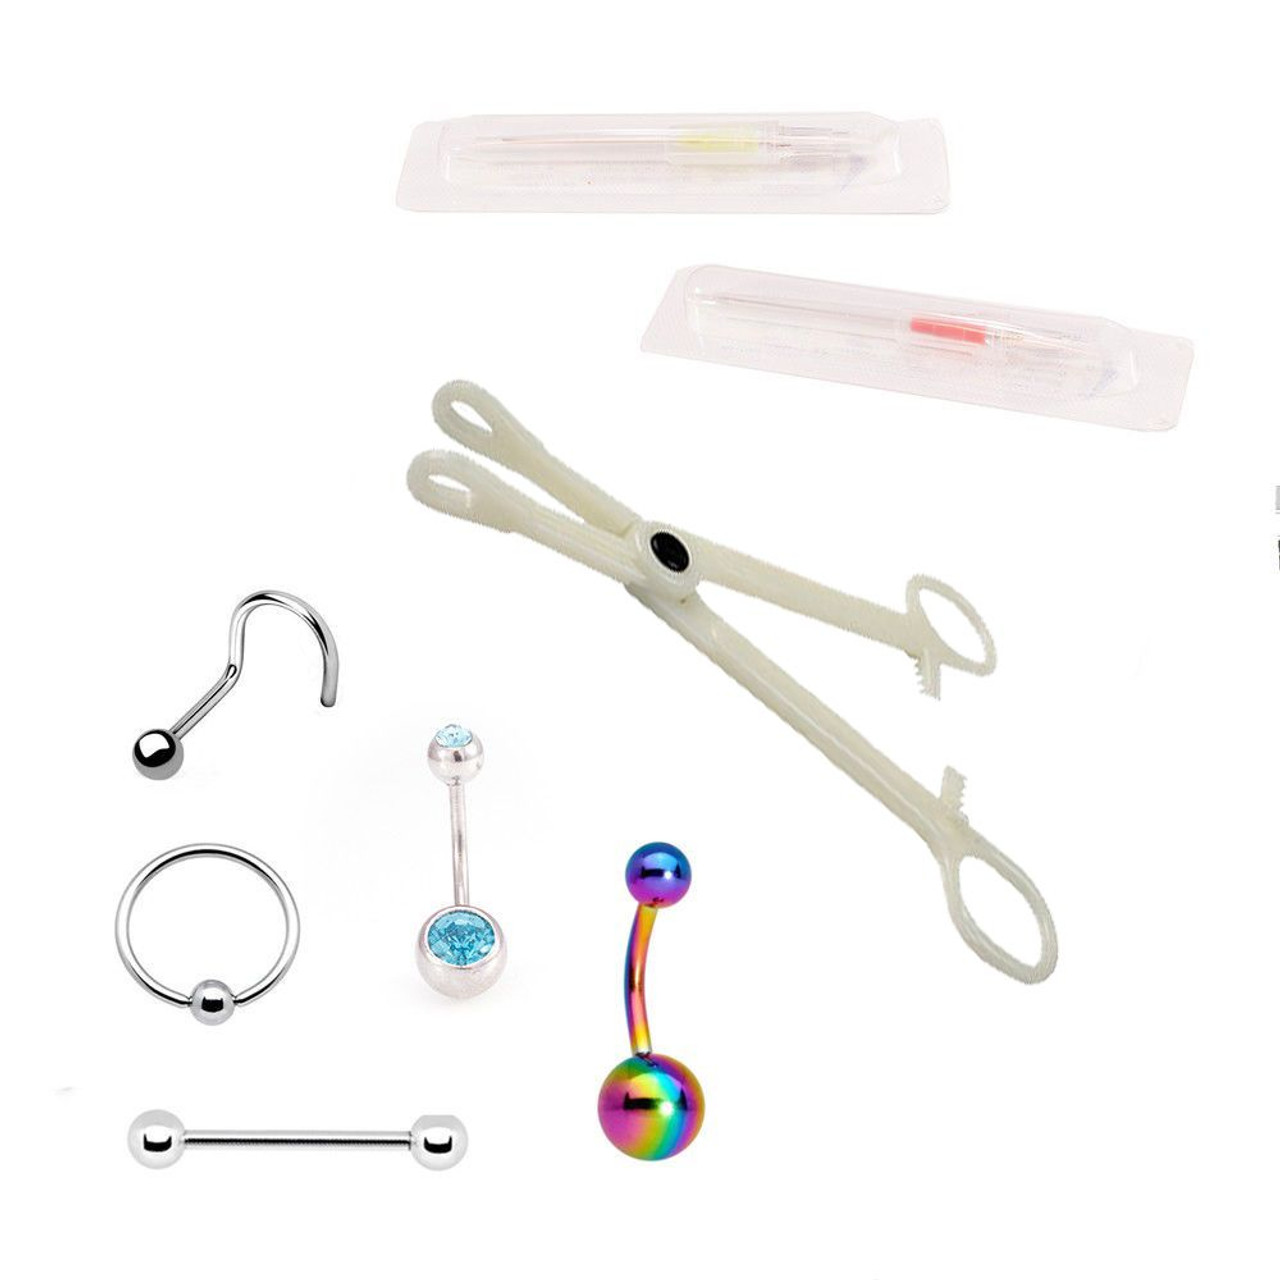 Piercing Tools, Piercing Kits